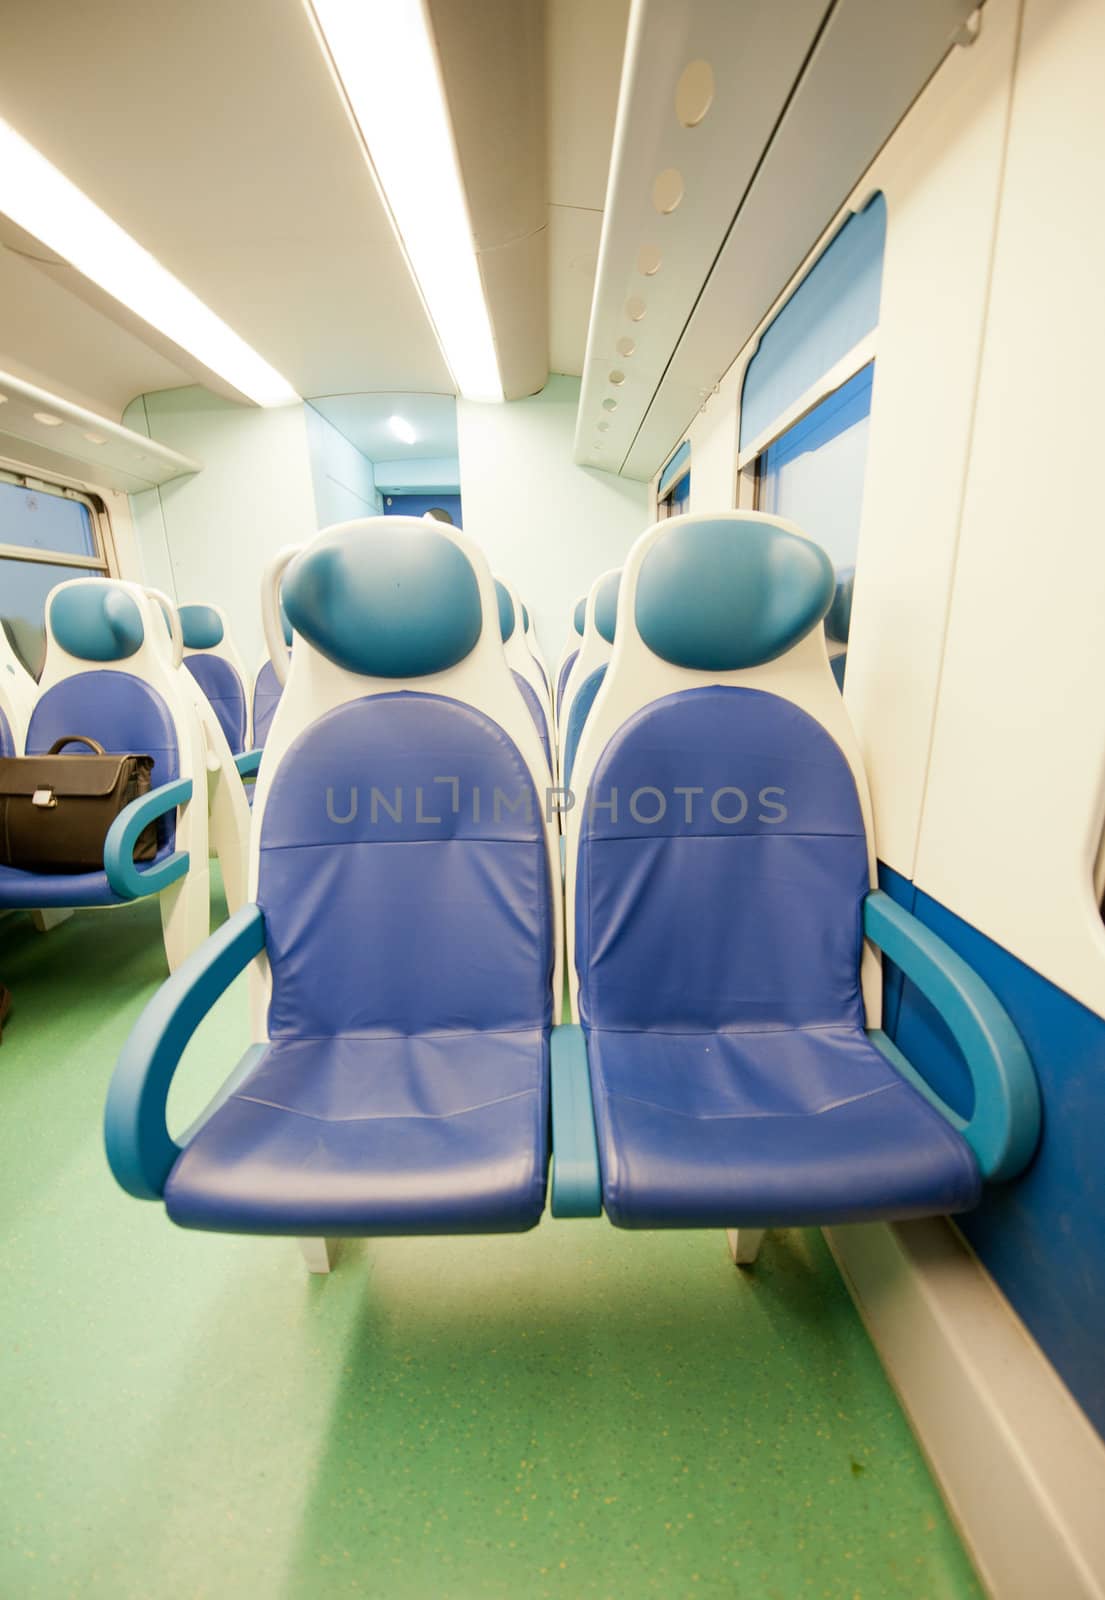 Train interior by bravajulia